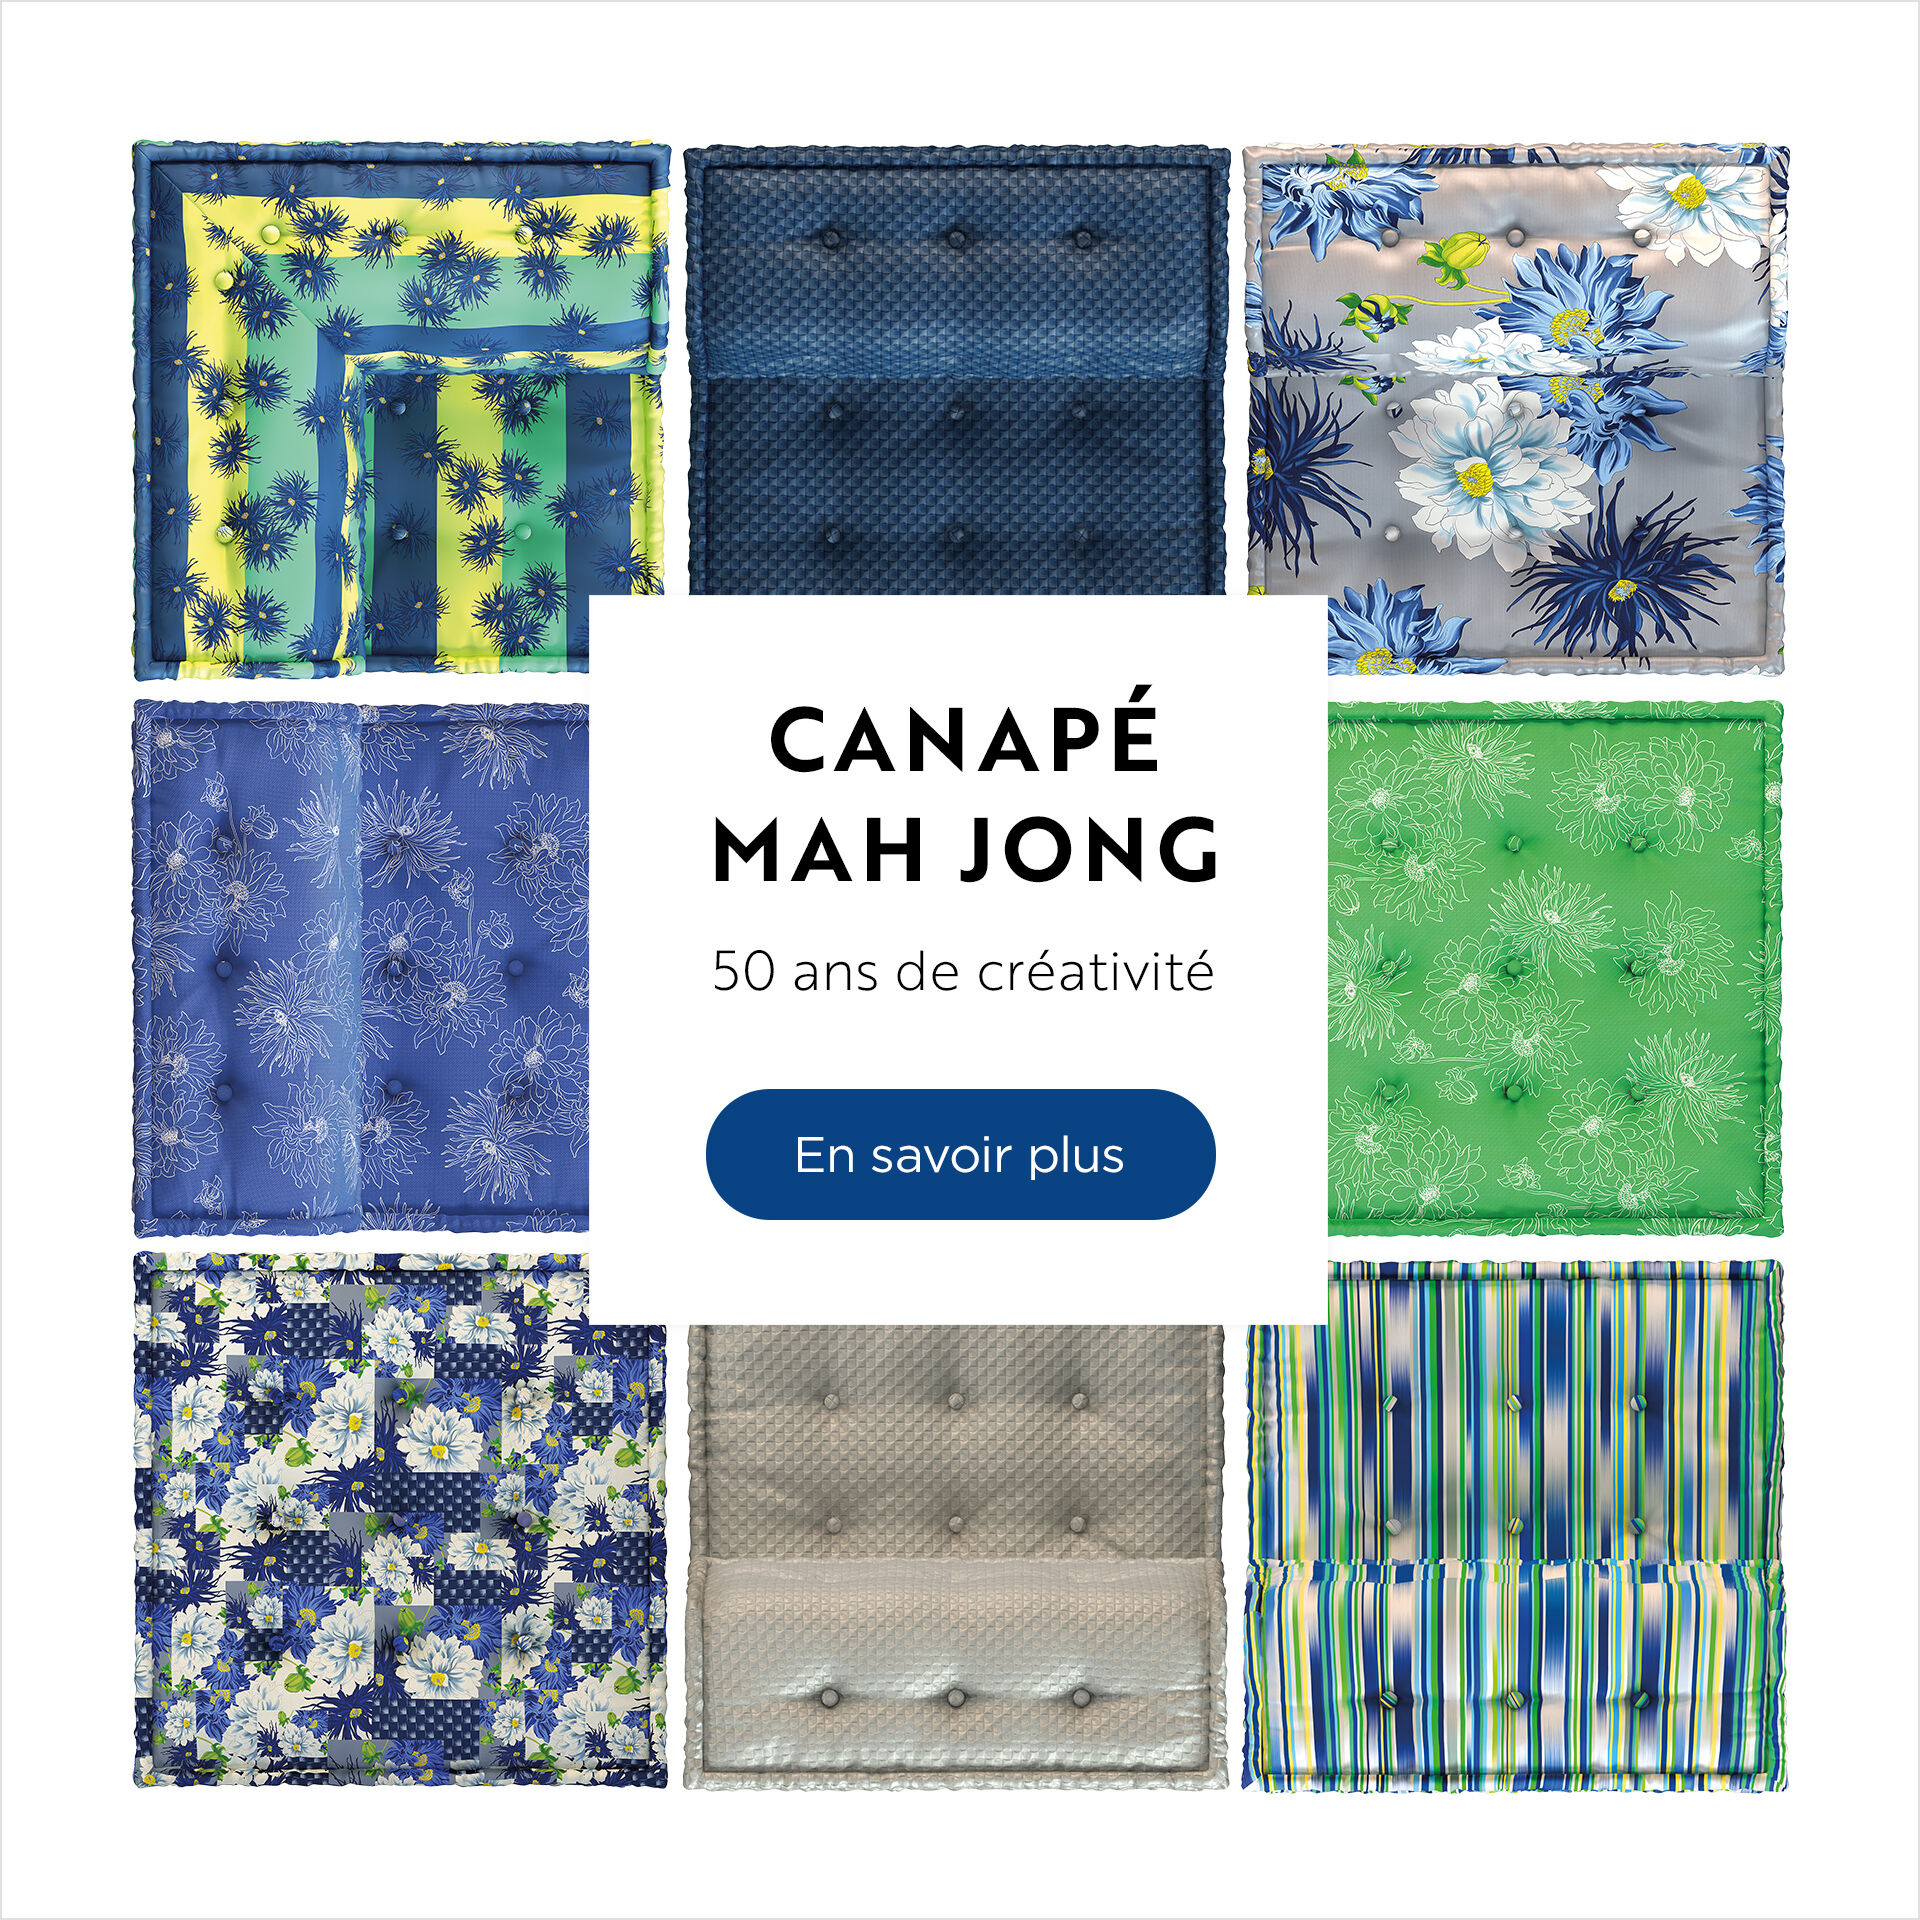 Canapé Mah Jong